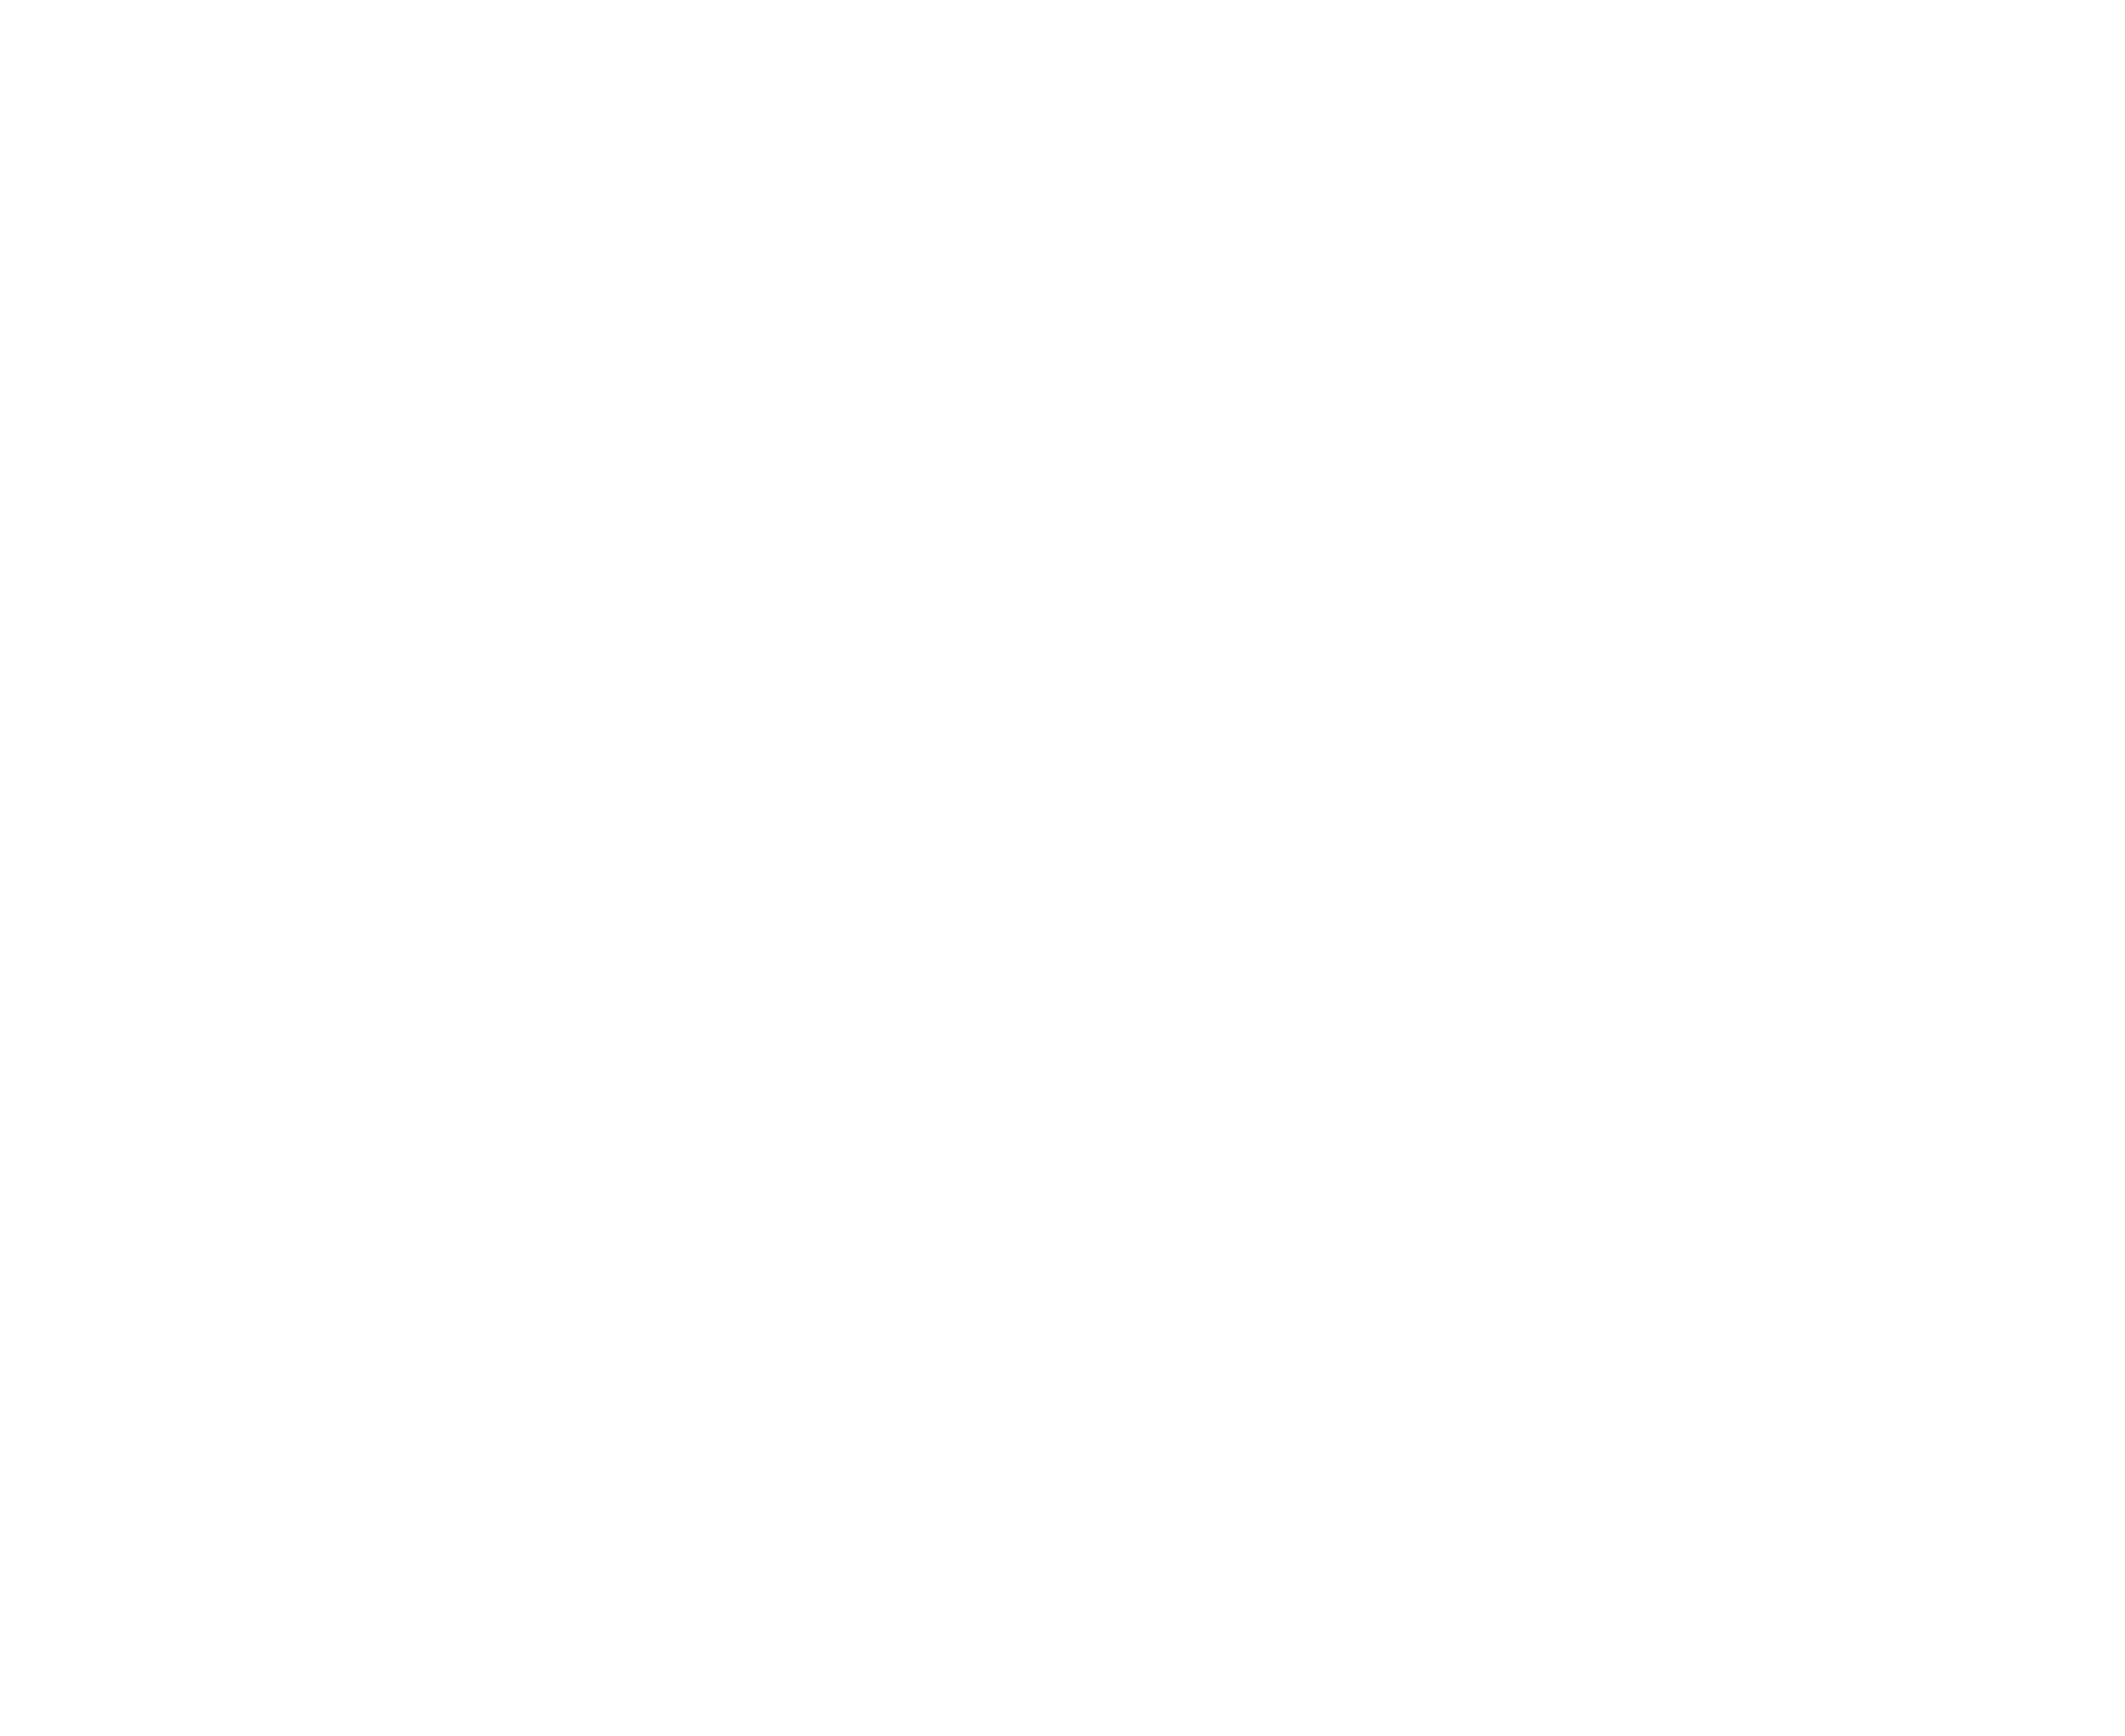 Holiday | Audium | Audiovisuele producties en verhuur op broadcastmarkt Ranst